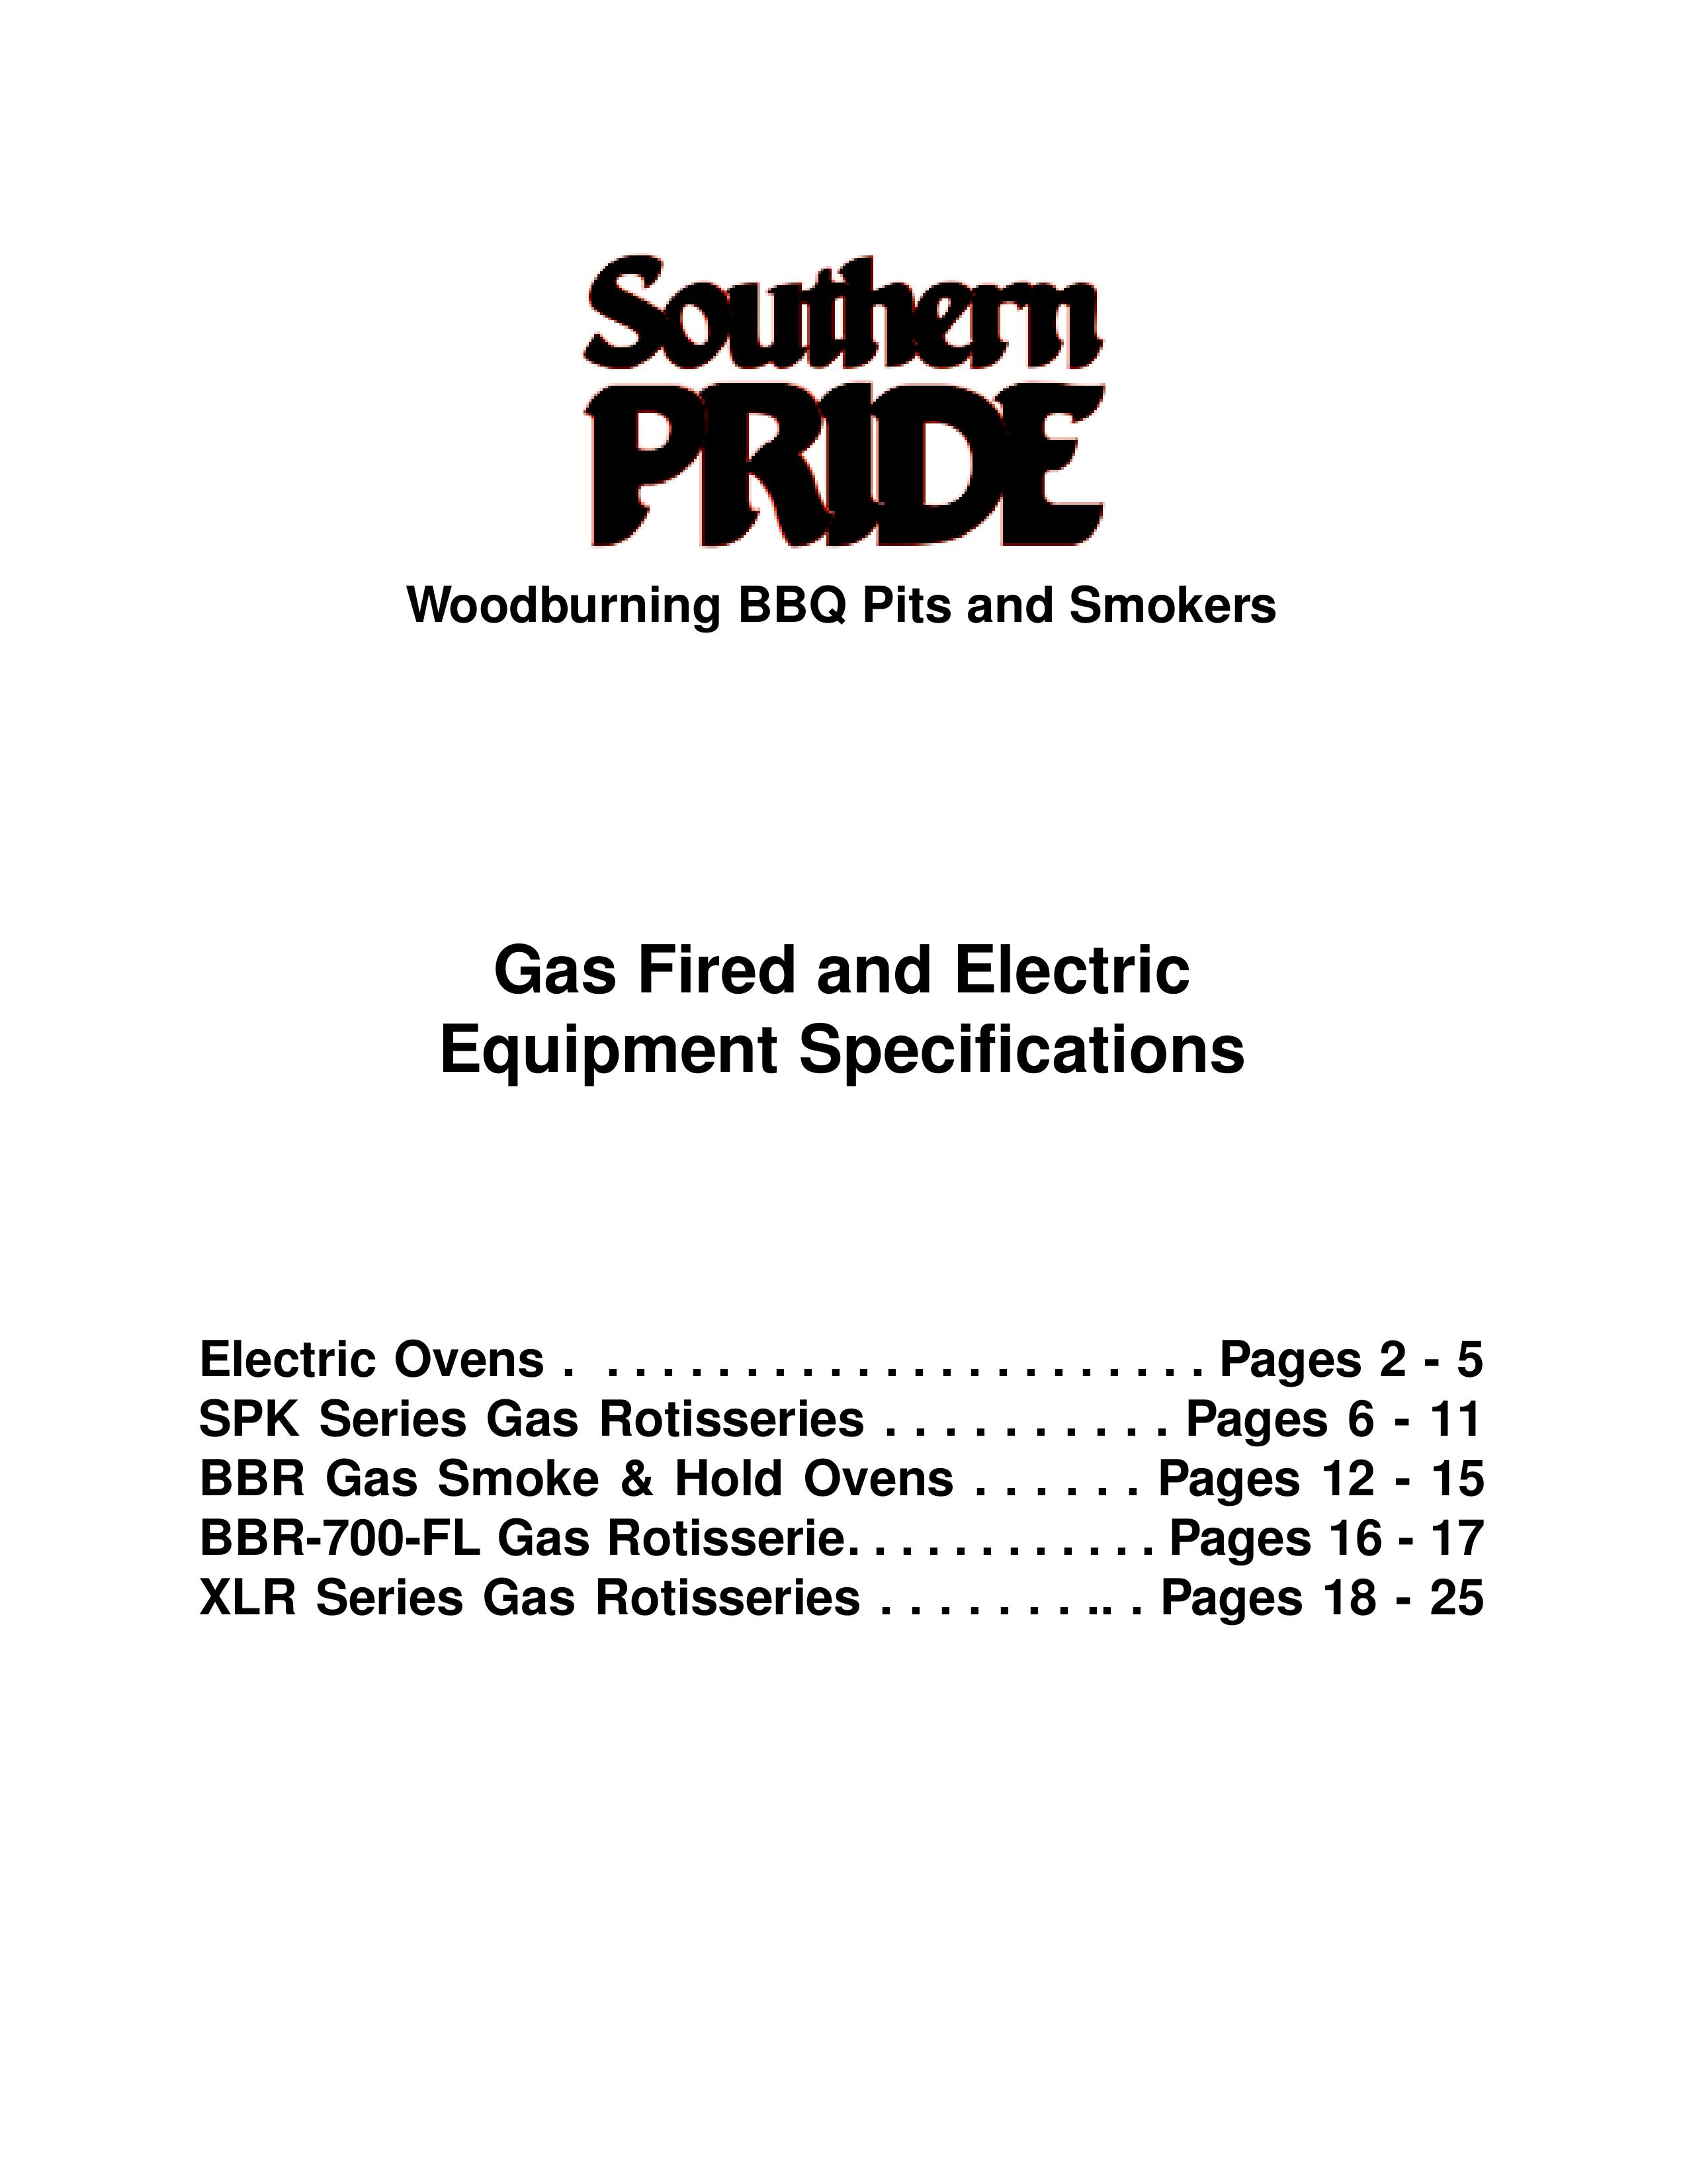 Southern Pride XLR-1400-SLSE Smoker User Manual